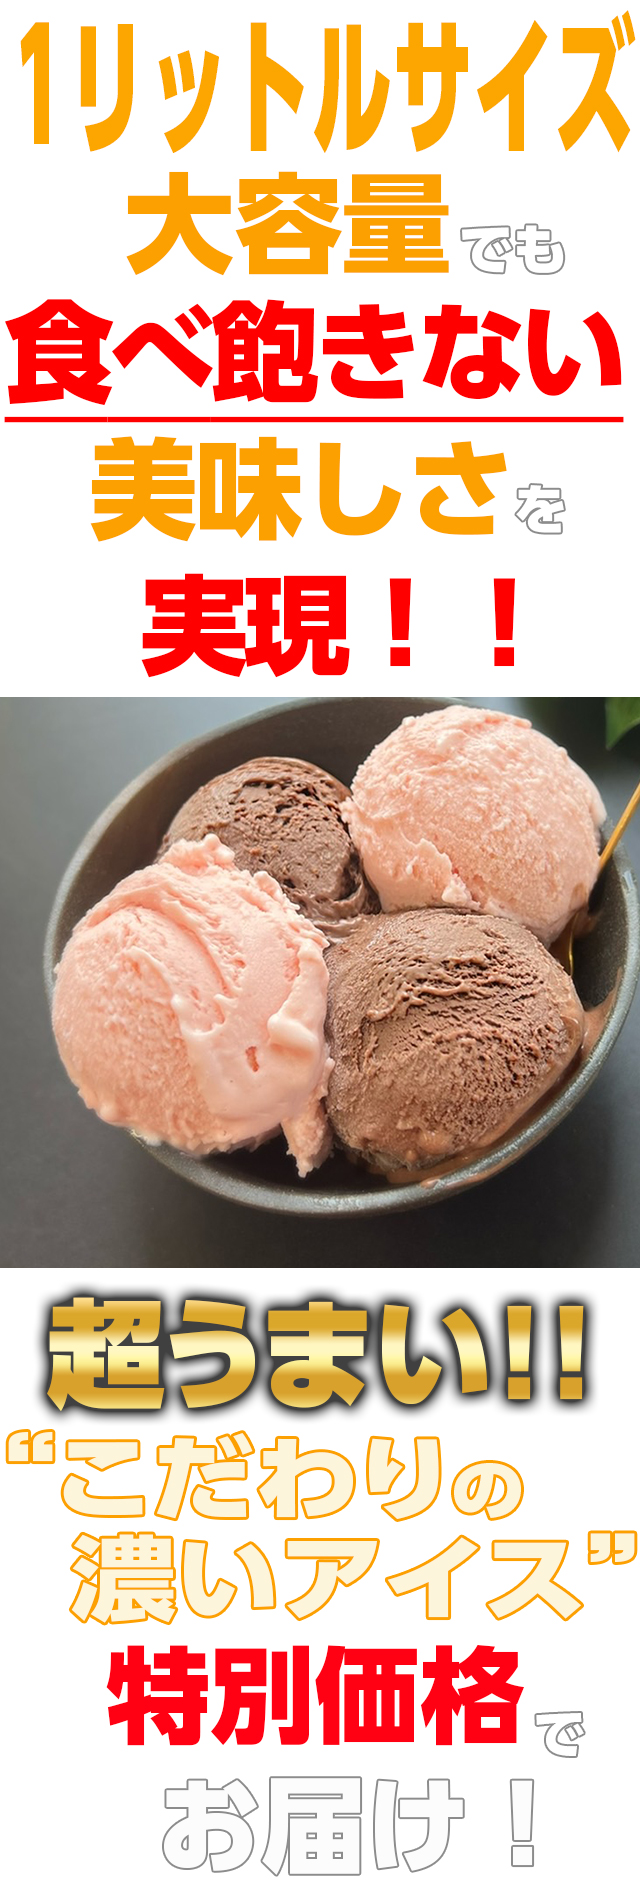 アイス アイスクリーム 濃いアイス 大容量 1リットル ショコラ ストロベリー バルク チョコレート 苺 いちご 業務用 安い 濃厚 おためし